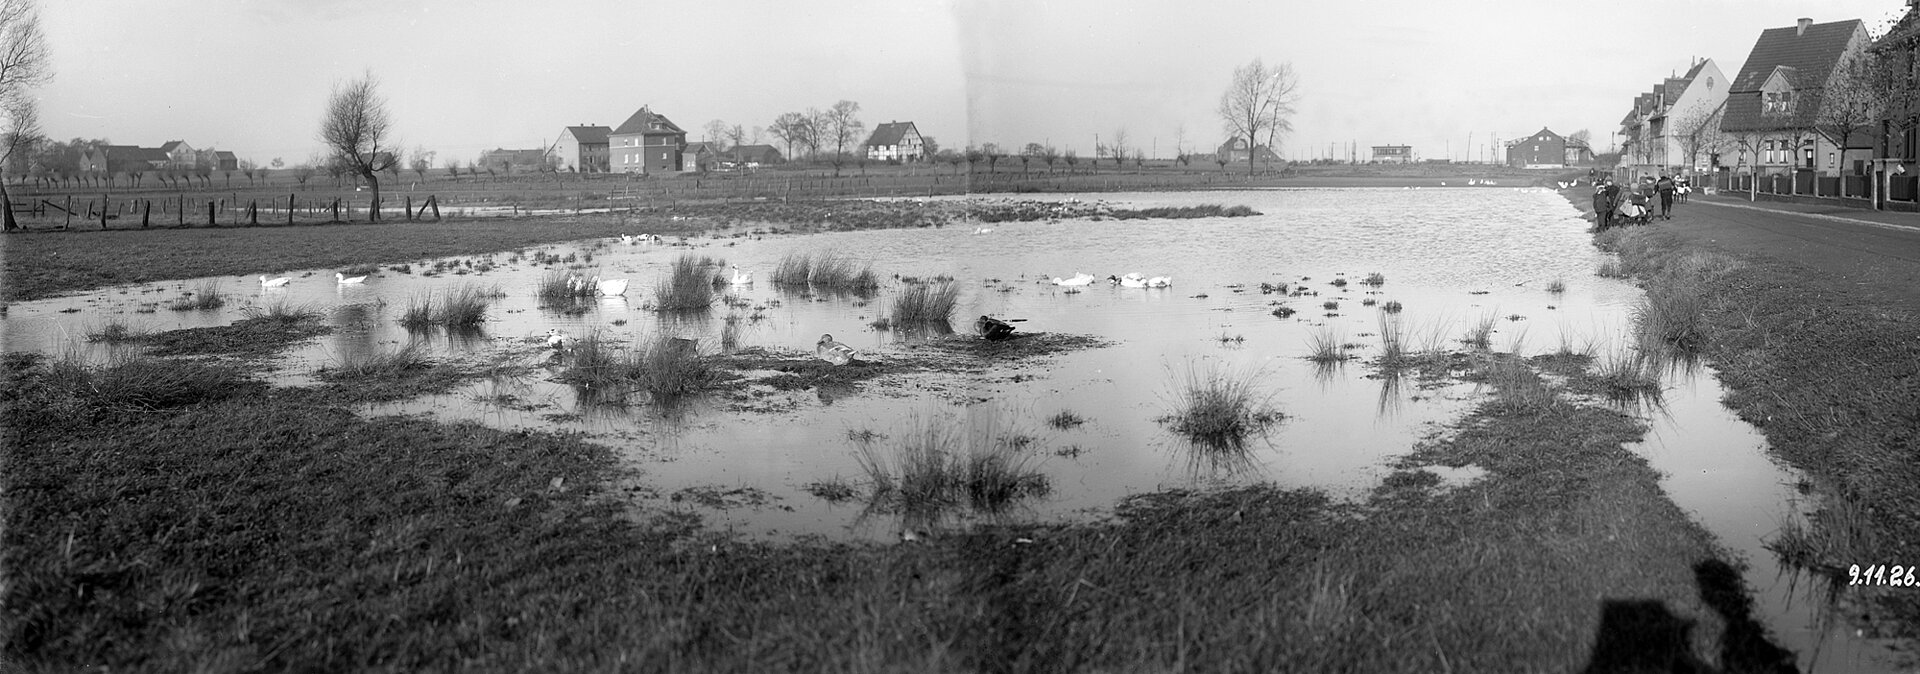 Hochwasser an der Emscher, Zechenkolonie Hansemann in Dortmund, 1926.